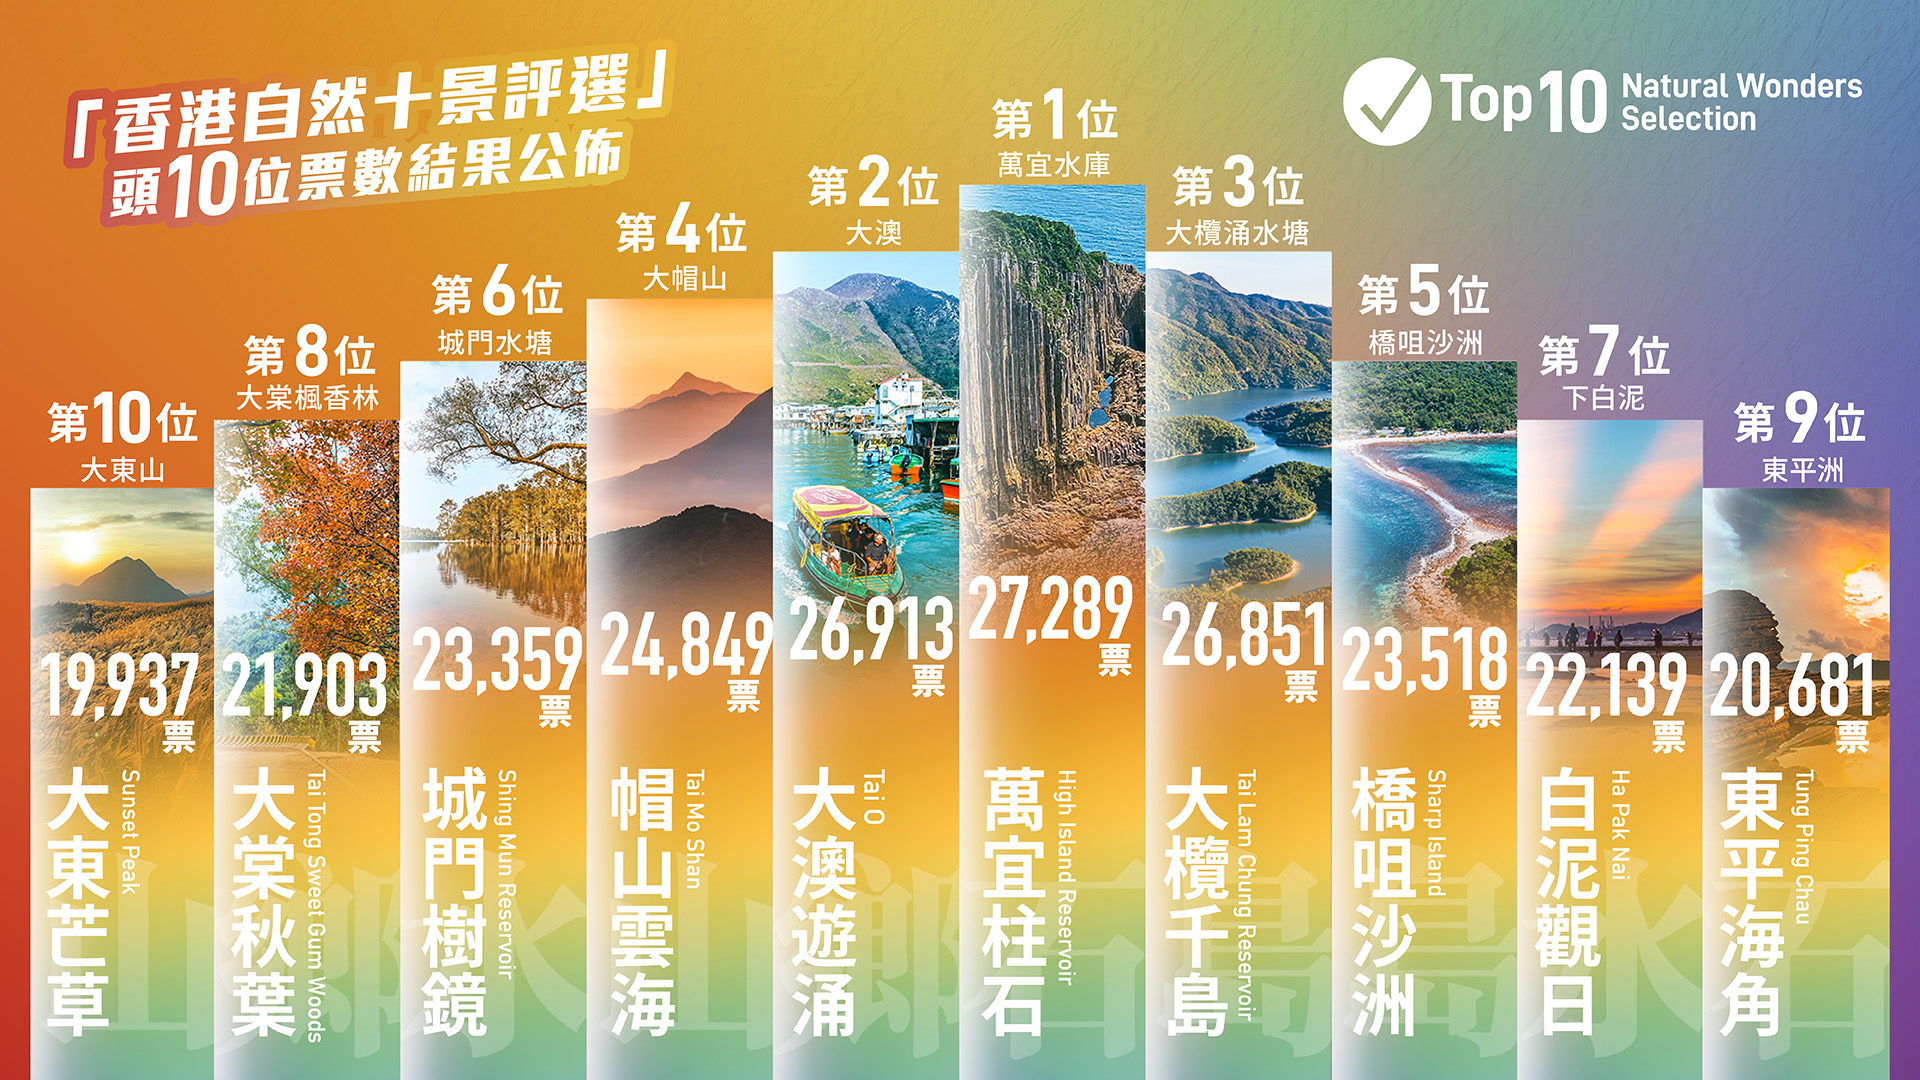 近日香港地方志中心公布「美麗香港」全民參與的「香港自然十景評選」結果，當中的「票王」「萬宜柱石」正是由1億4000萬年前糧船灣超級火山（High Island Supervolcano）爆發所形成的地質奇觀。